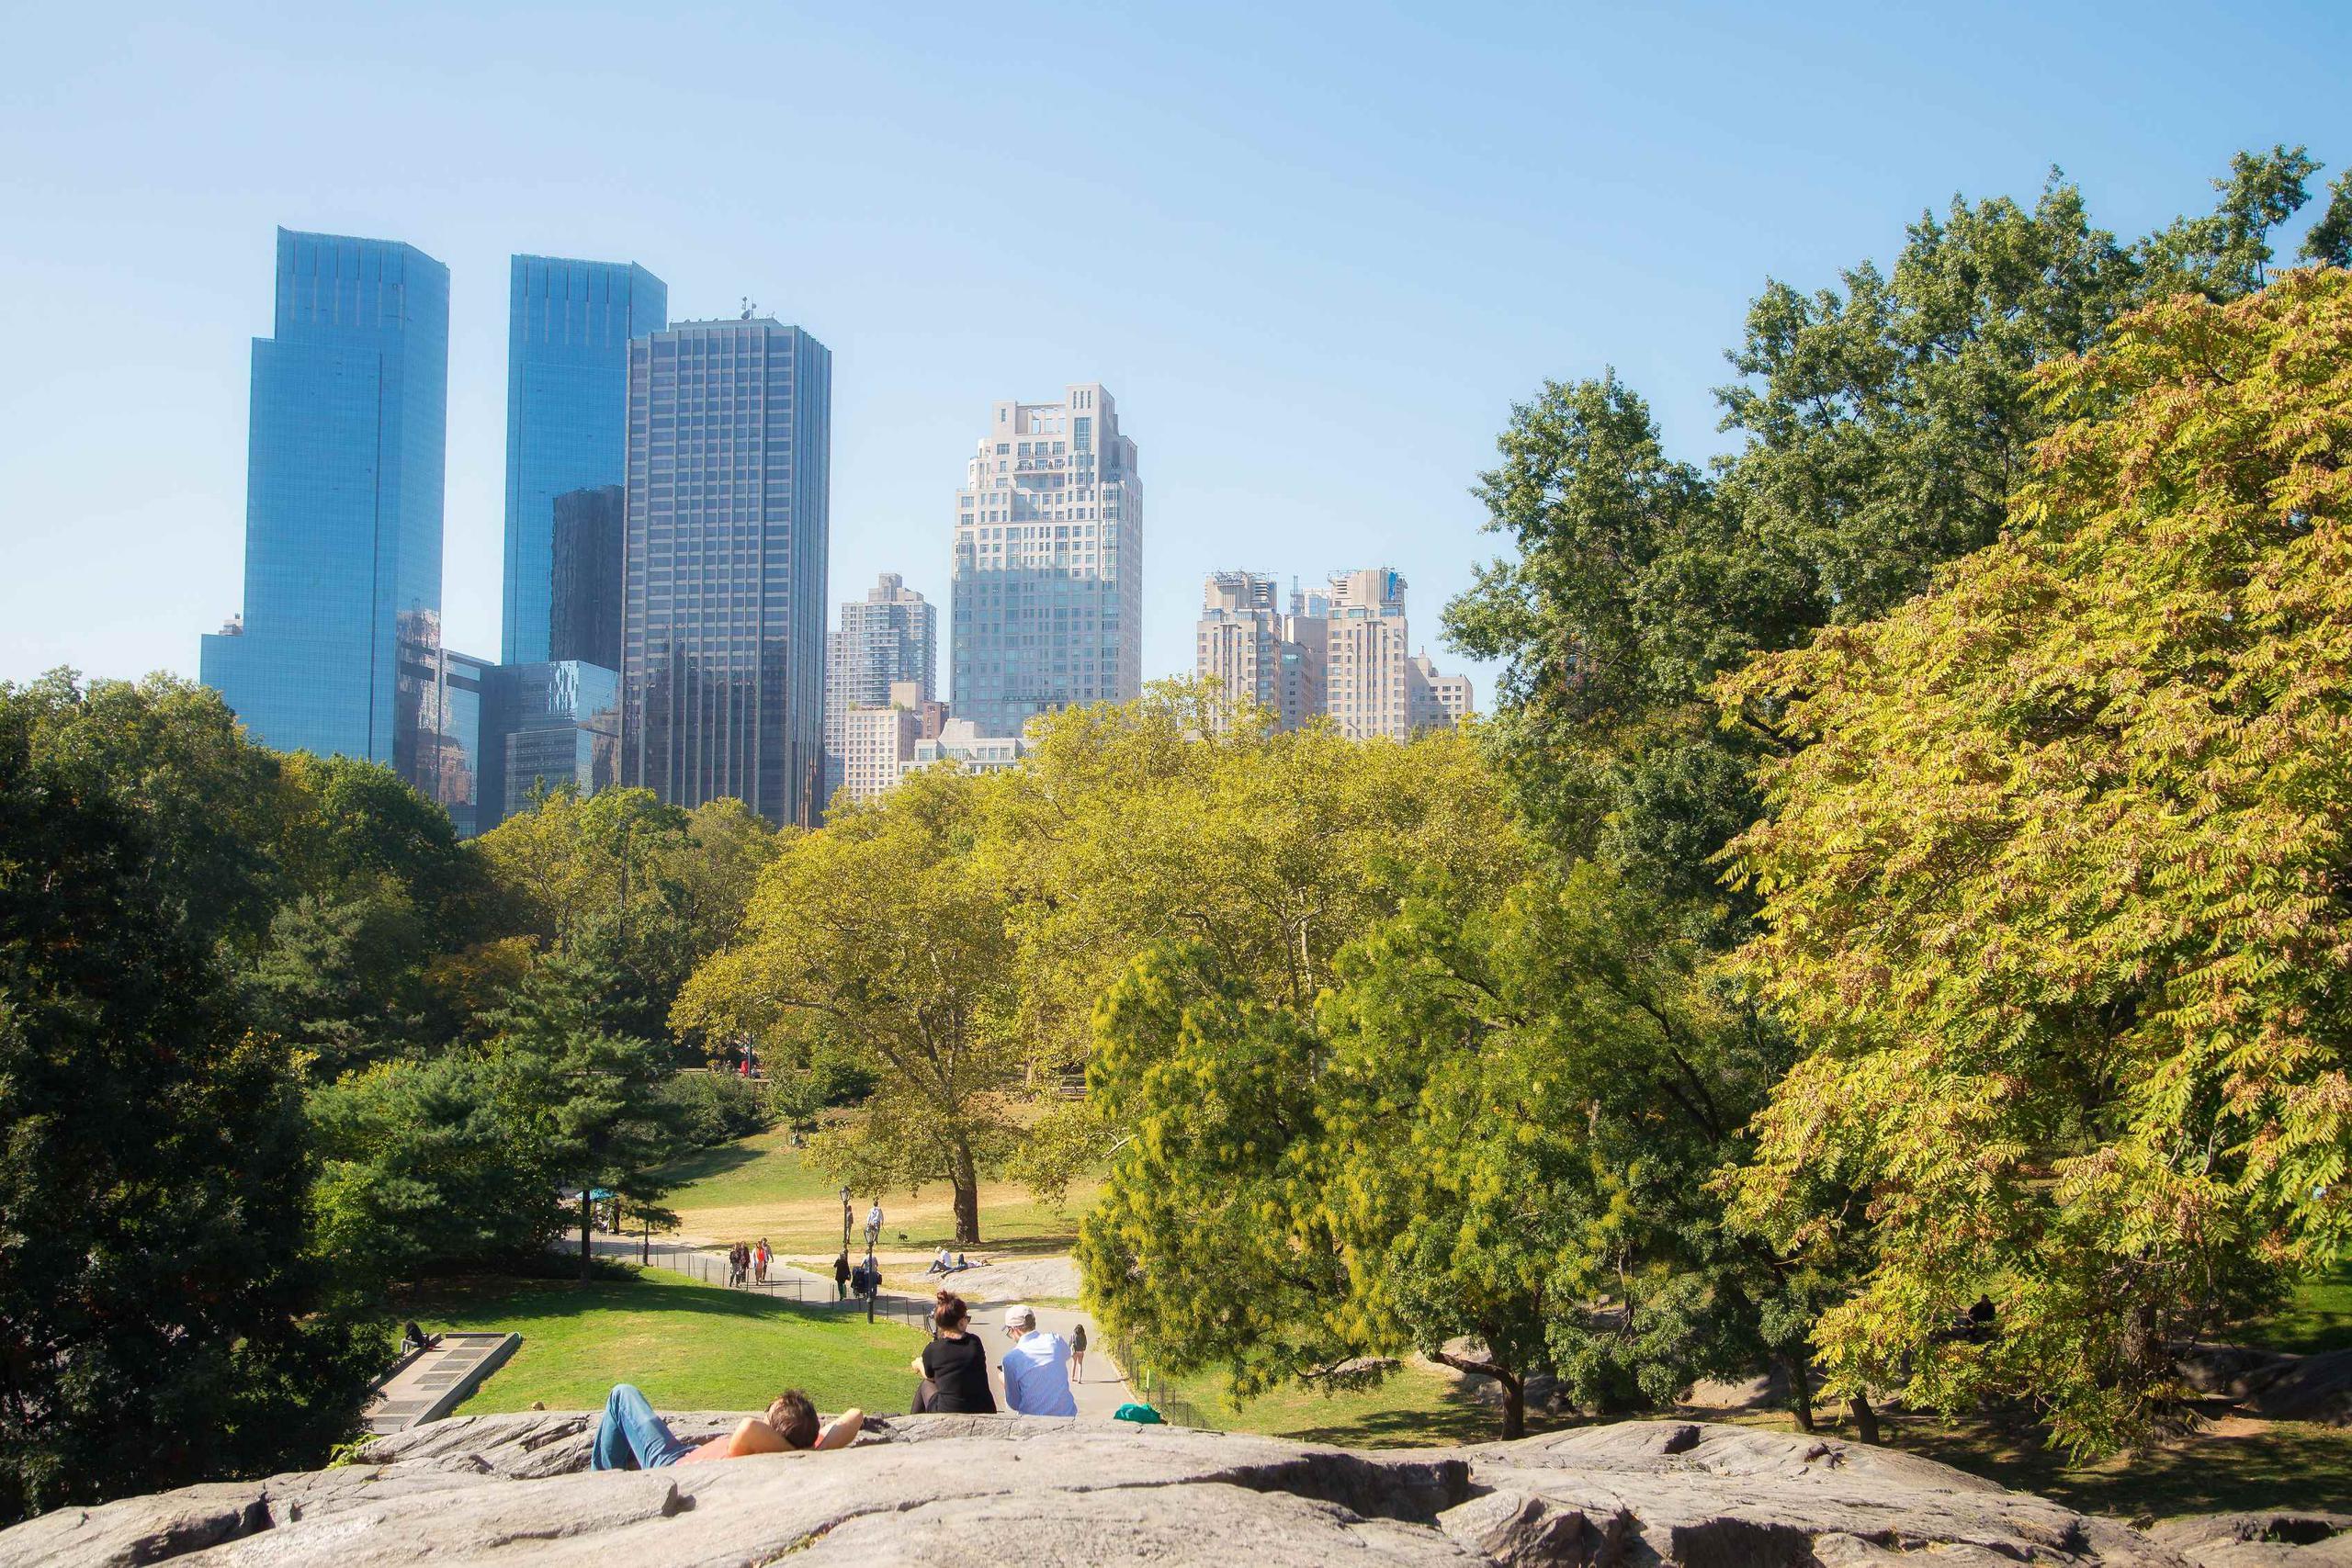 Unos 42 millones de personas visitan anualmente el Central Park. (GFR Media)